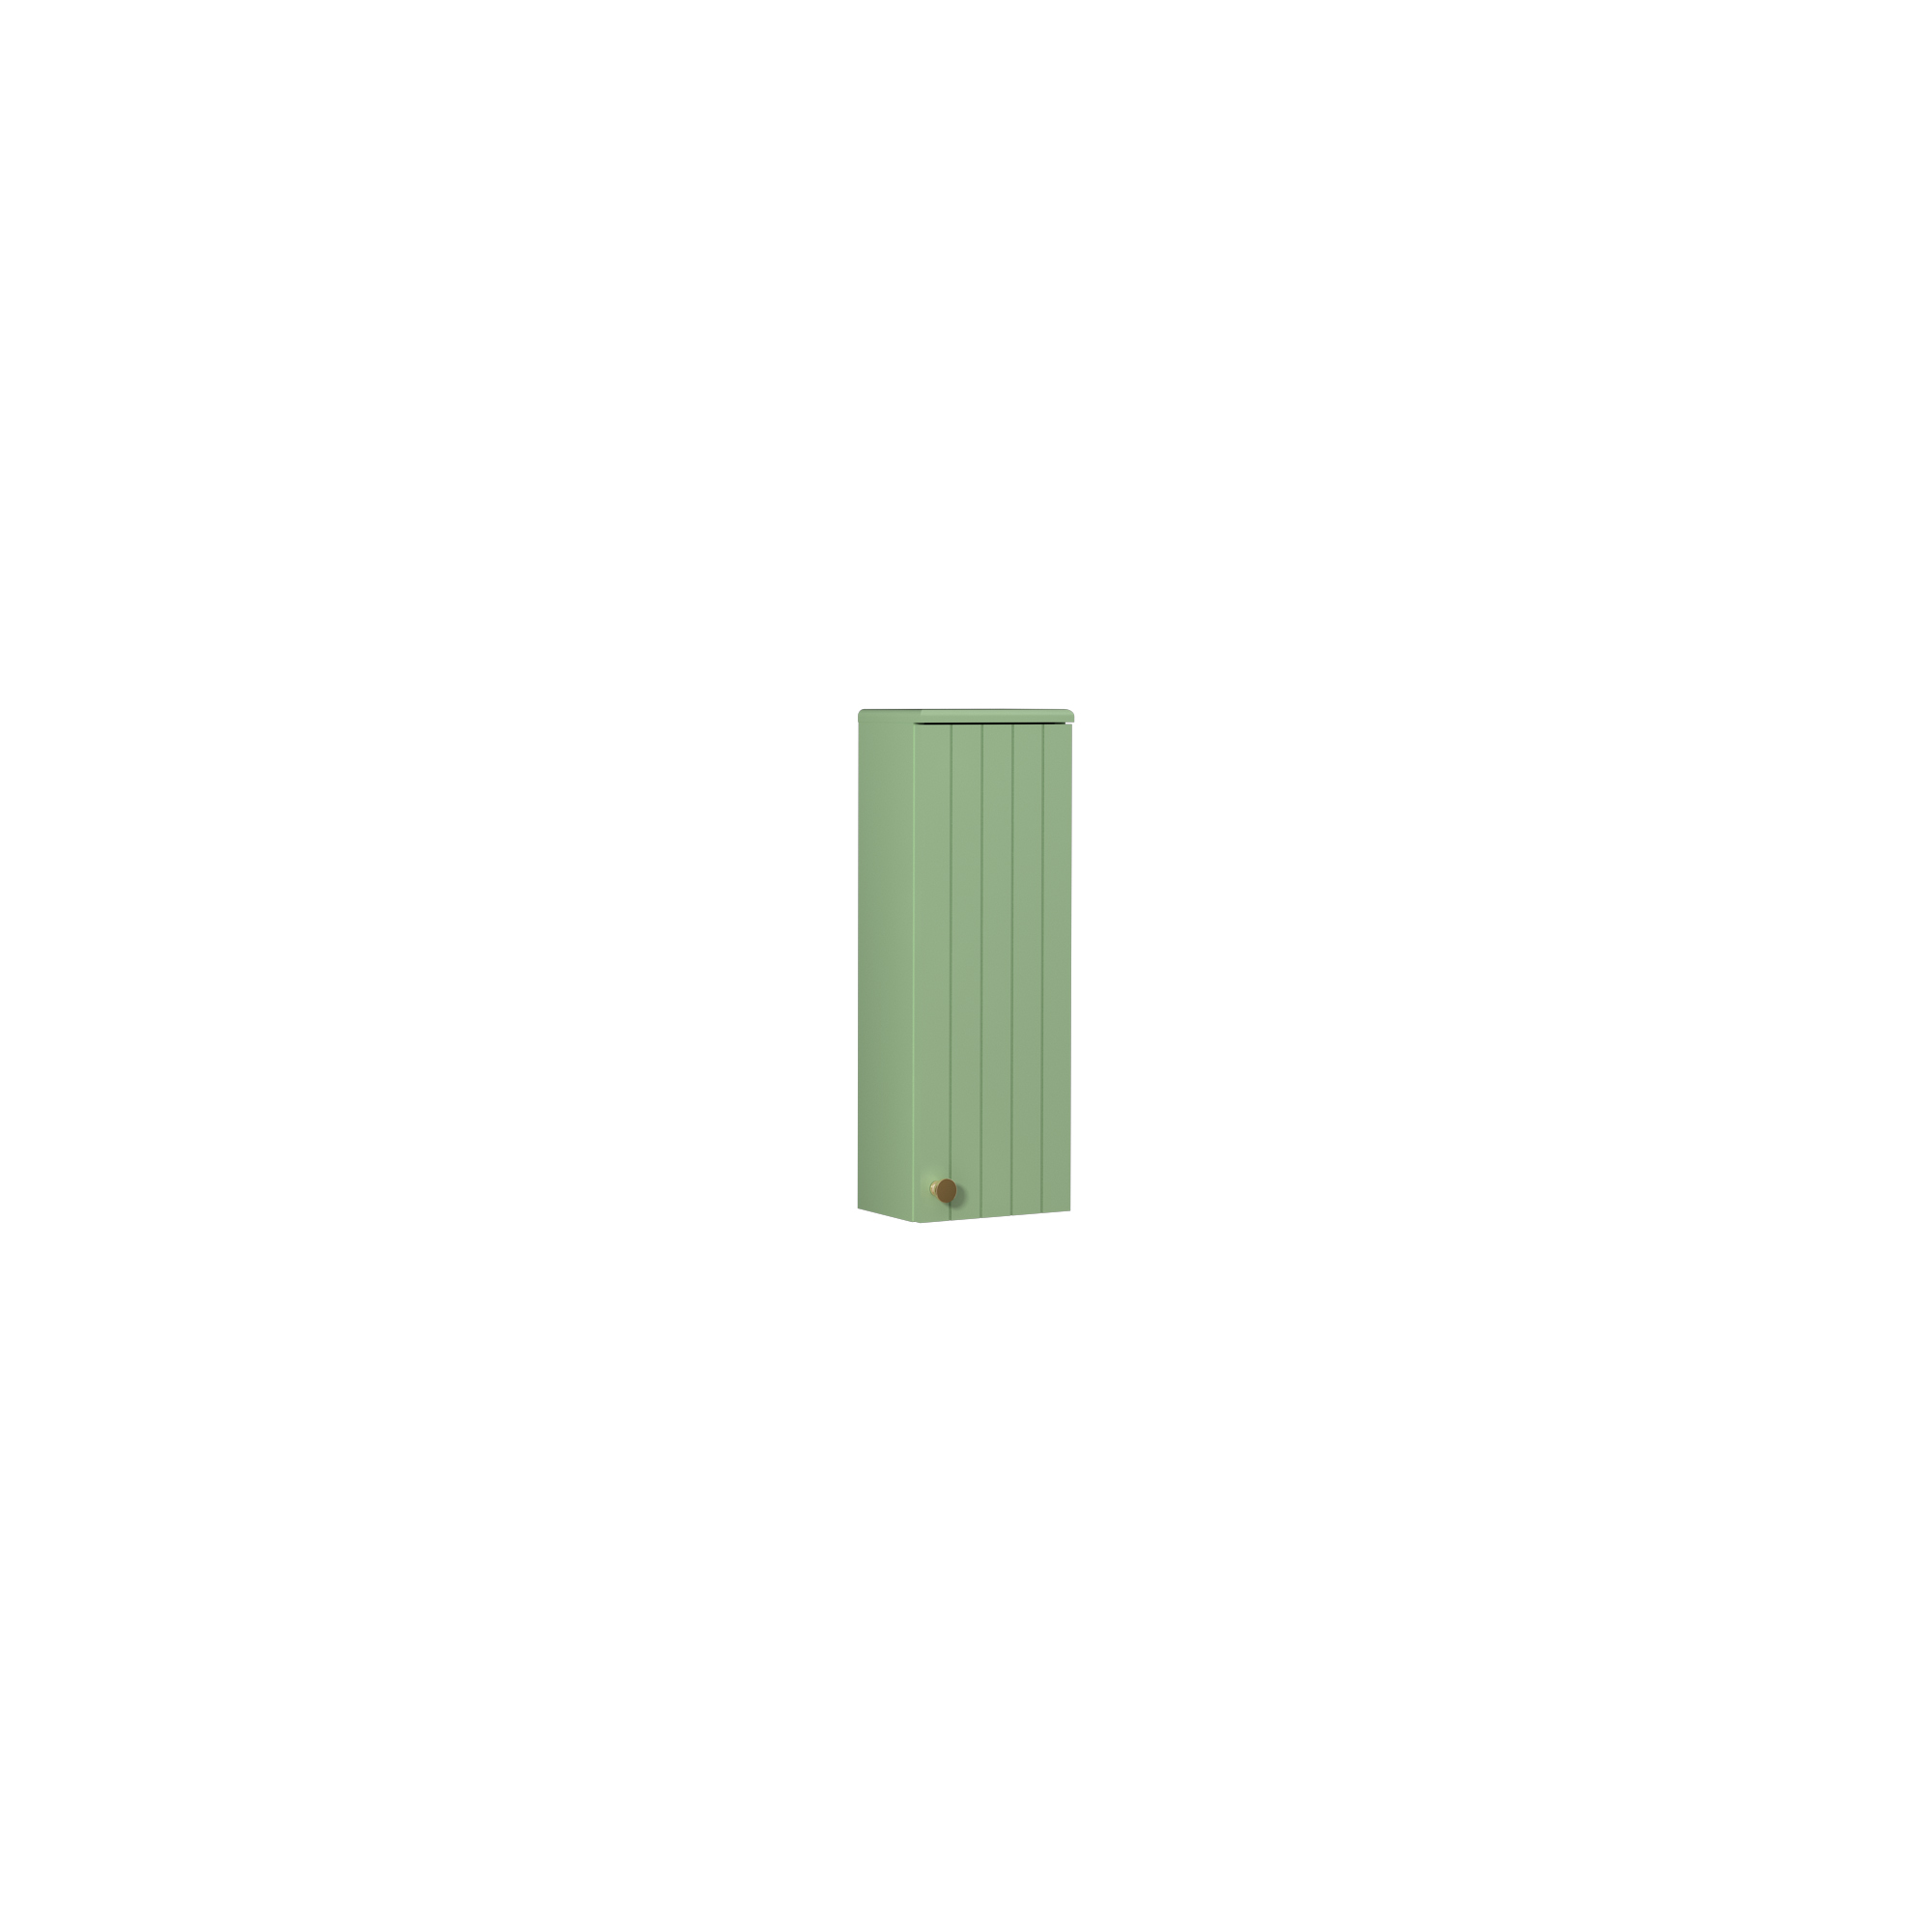 Rinato Upper Cabinet, Pastel Green Right 25 cm